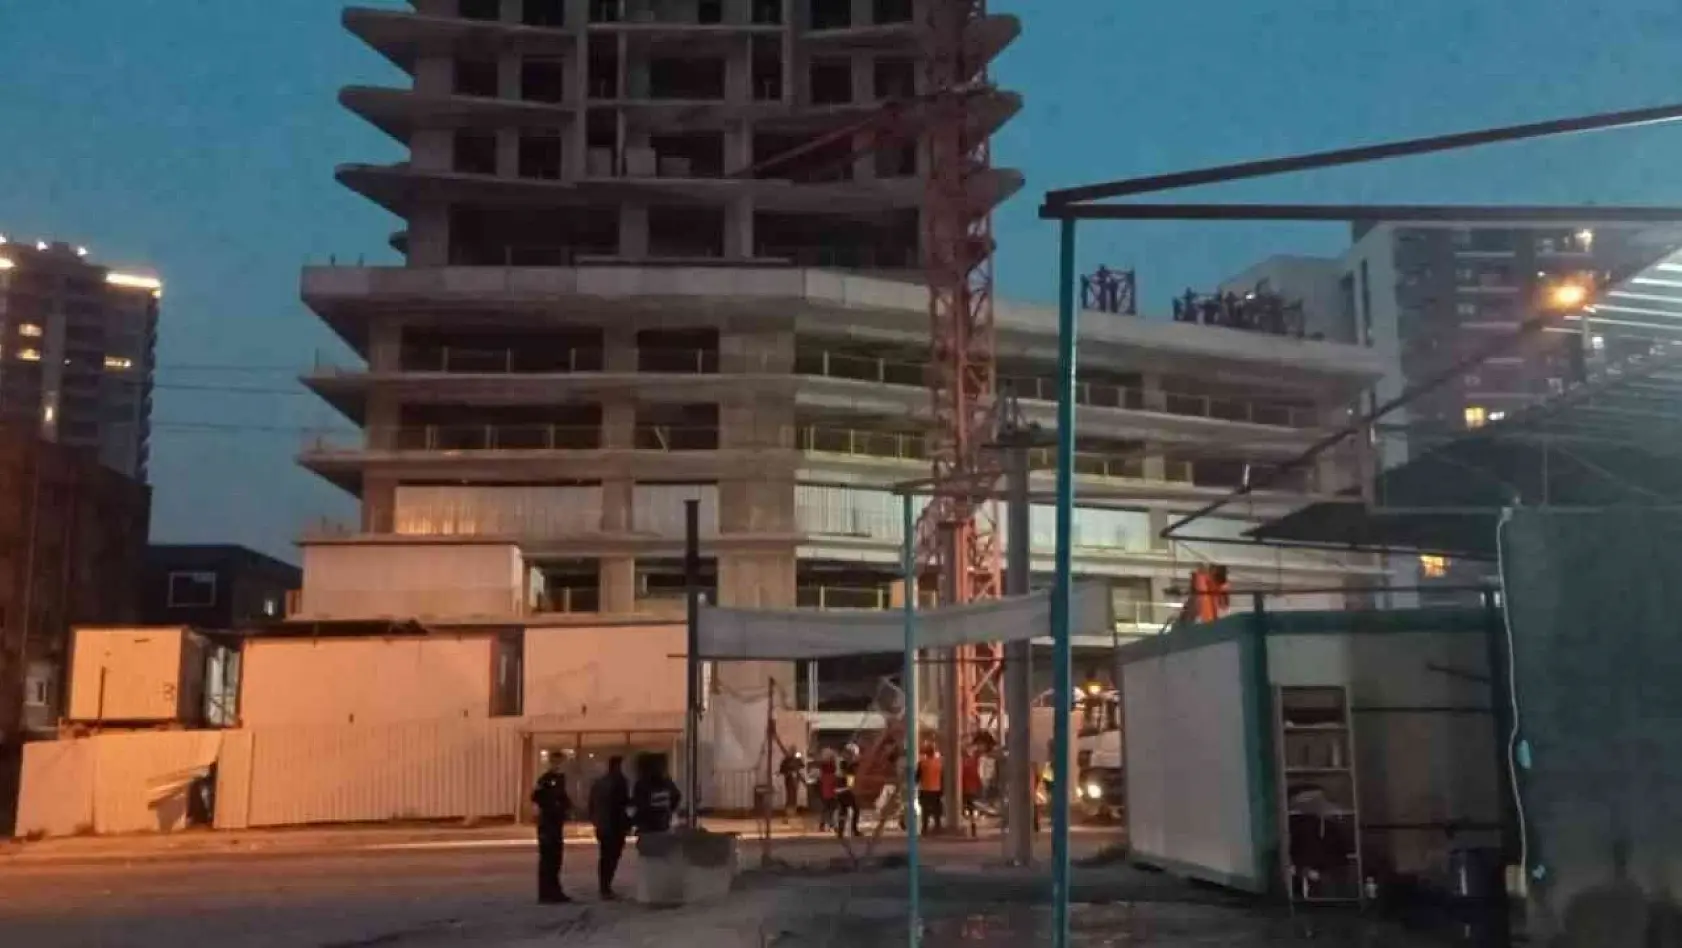 İzmir'in Bornova ilçesinde bir otel inşaatındaki kule vincin bir kısmı devrildi. Kazada ölü ve yaralıların olduğu belirtilirken, olay yerine çok sayıda ekip sevk edildi.